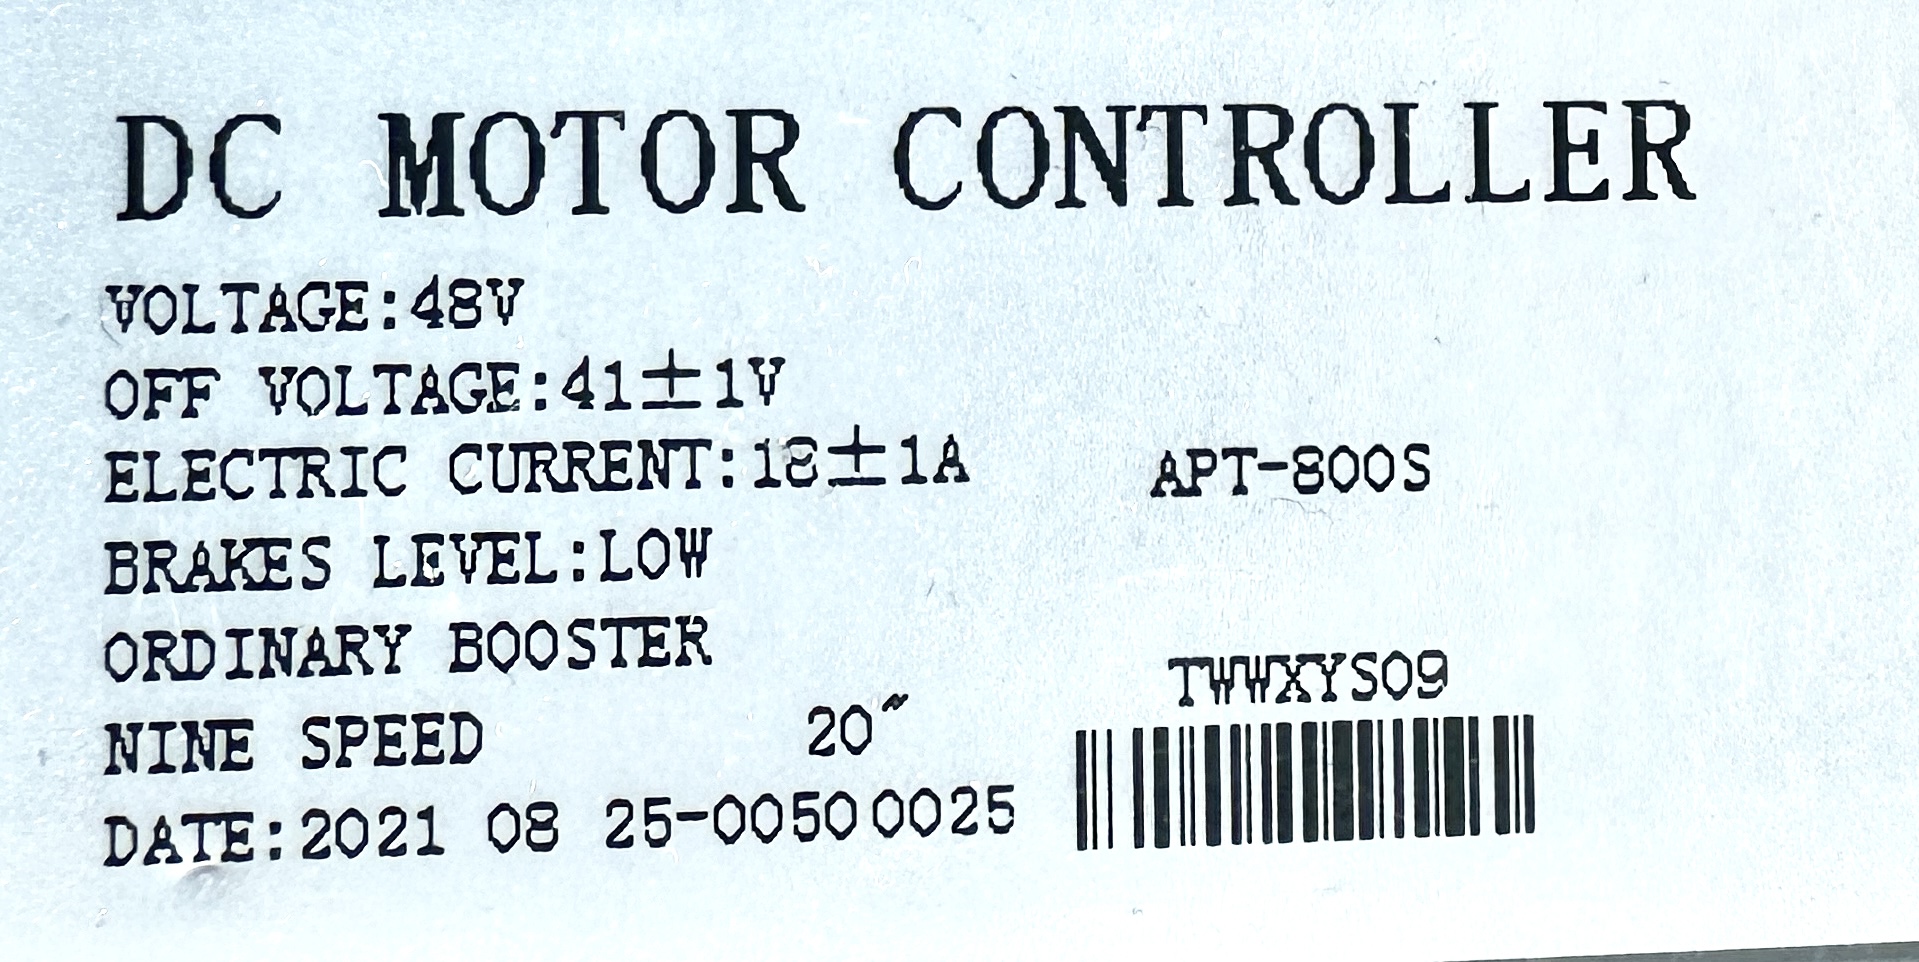 UD Controller motor 48V